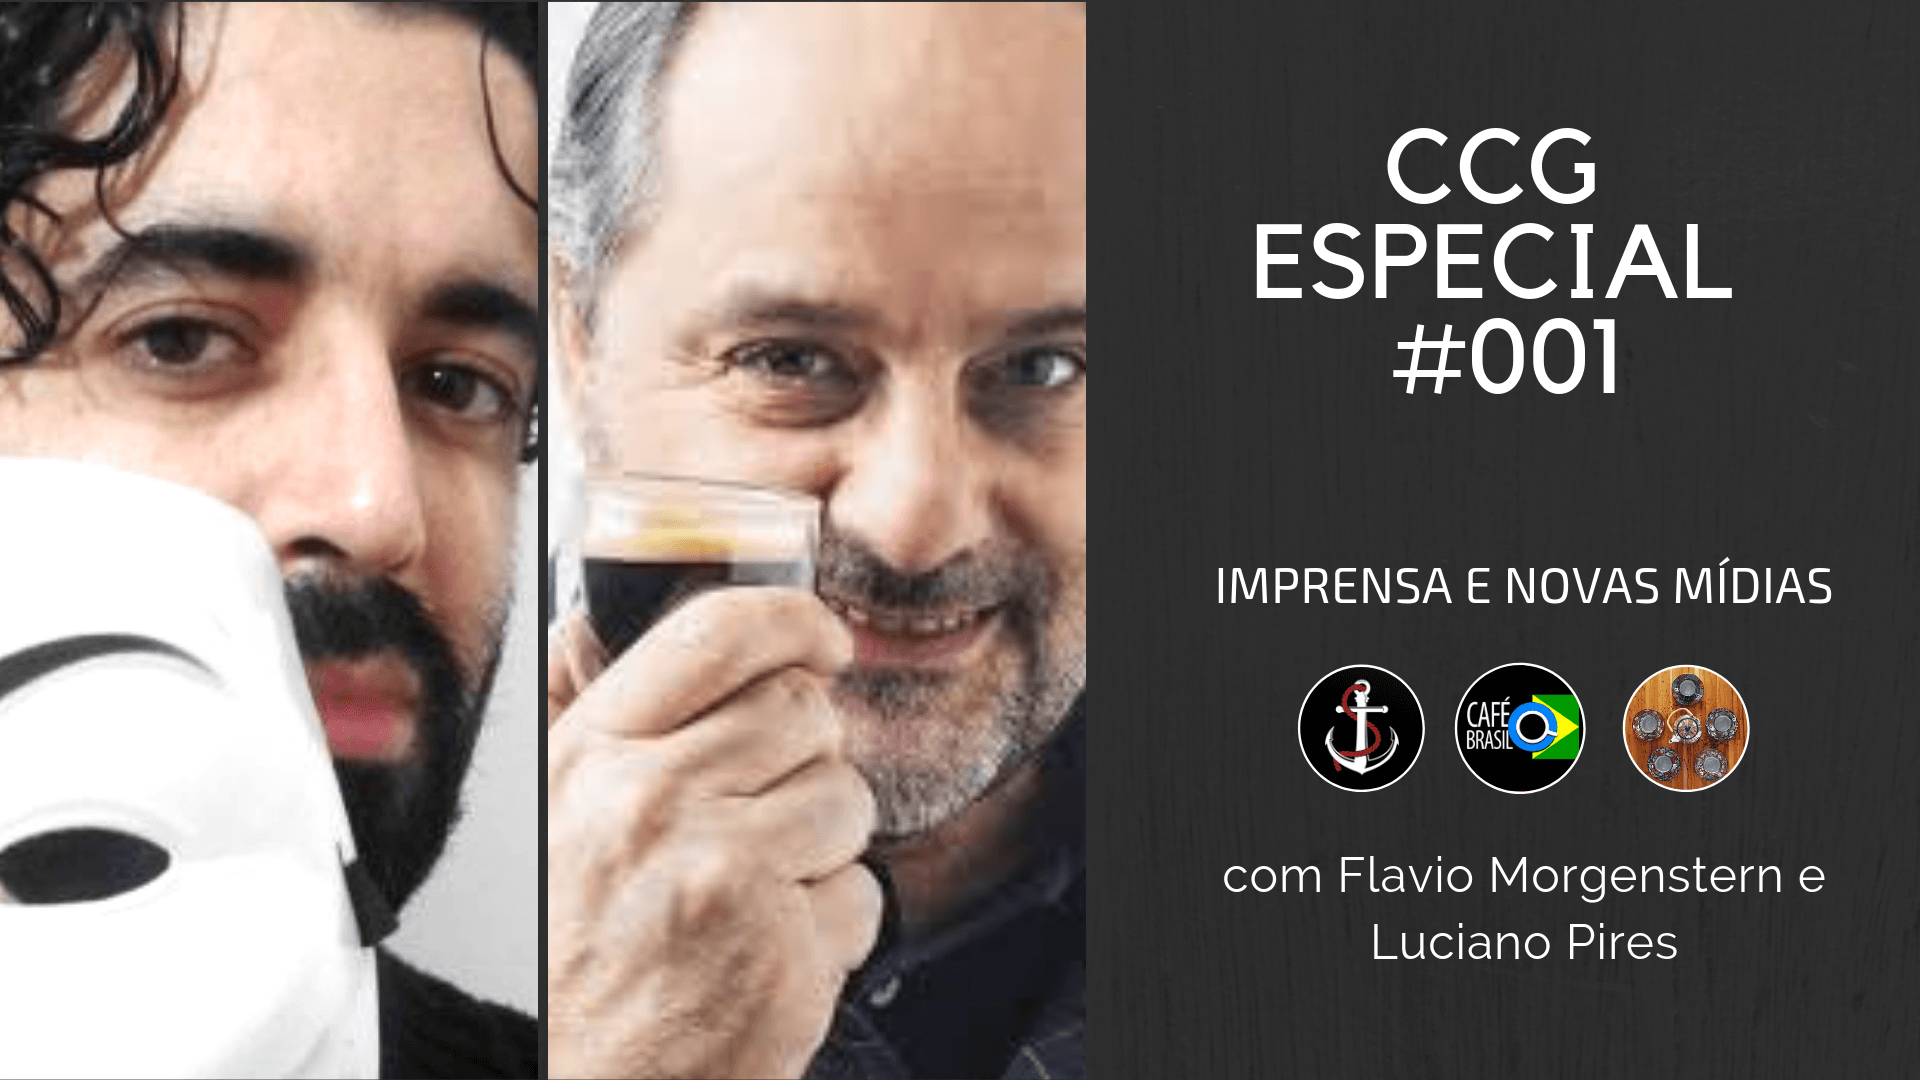 Flavio Morgenstern Luciano Pires Cha com a gente guten morgen Café Brasil podcast